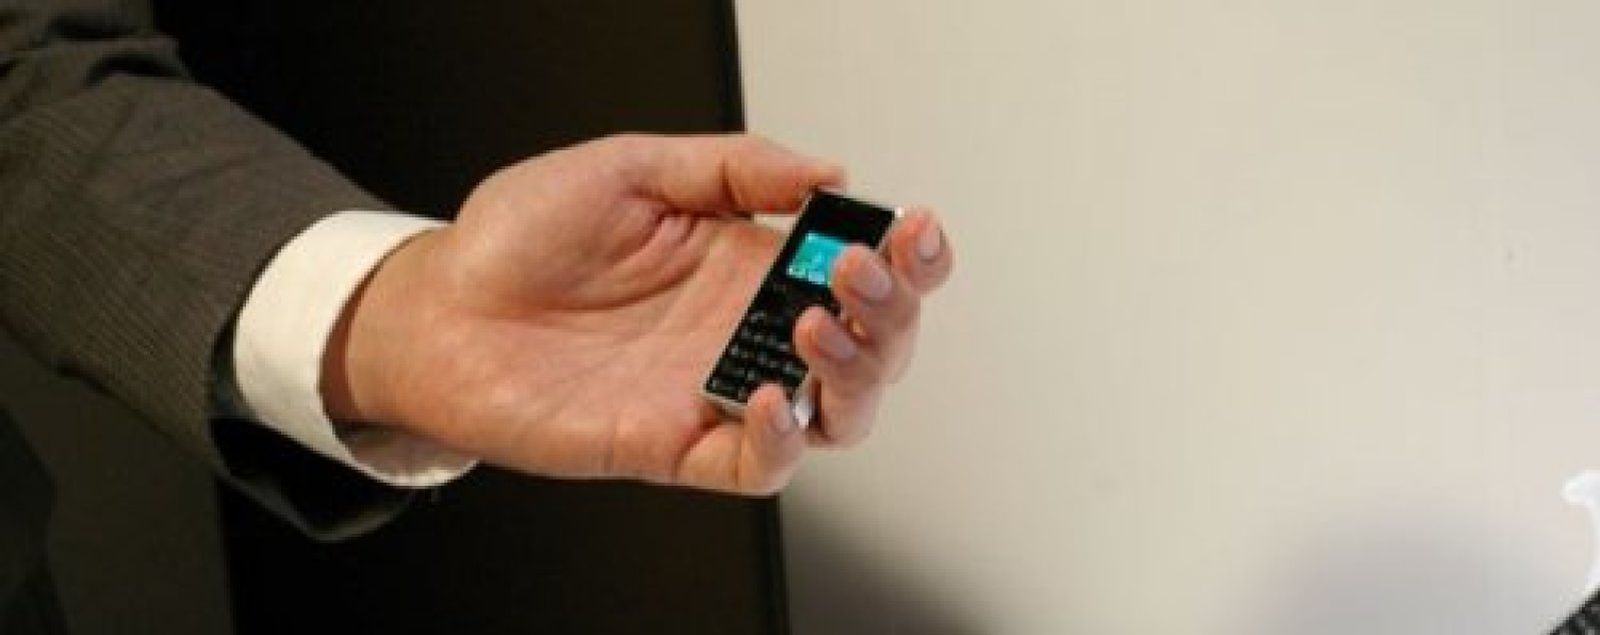 Así es el móvil más pequeño del mundo, Tecnología